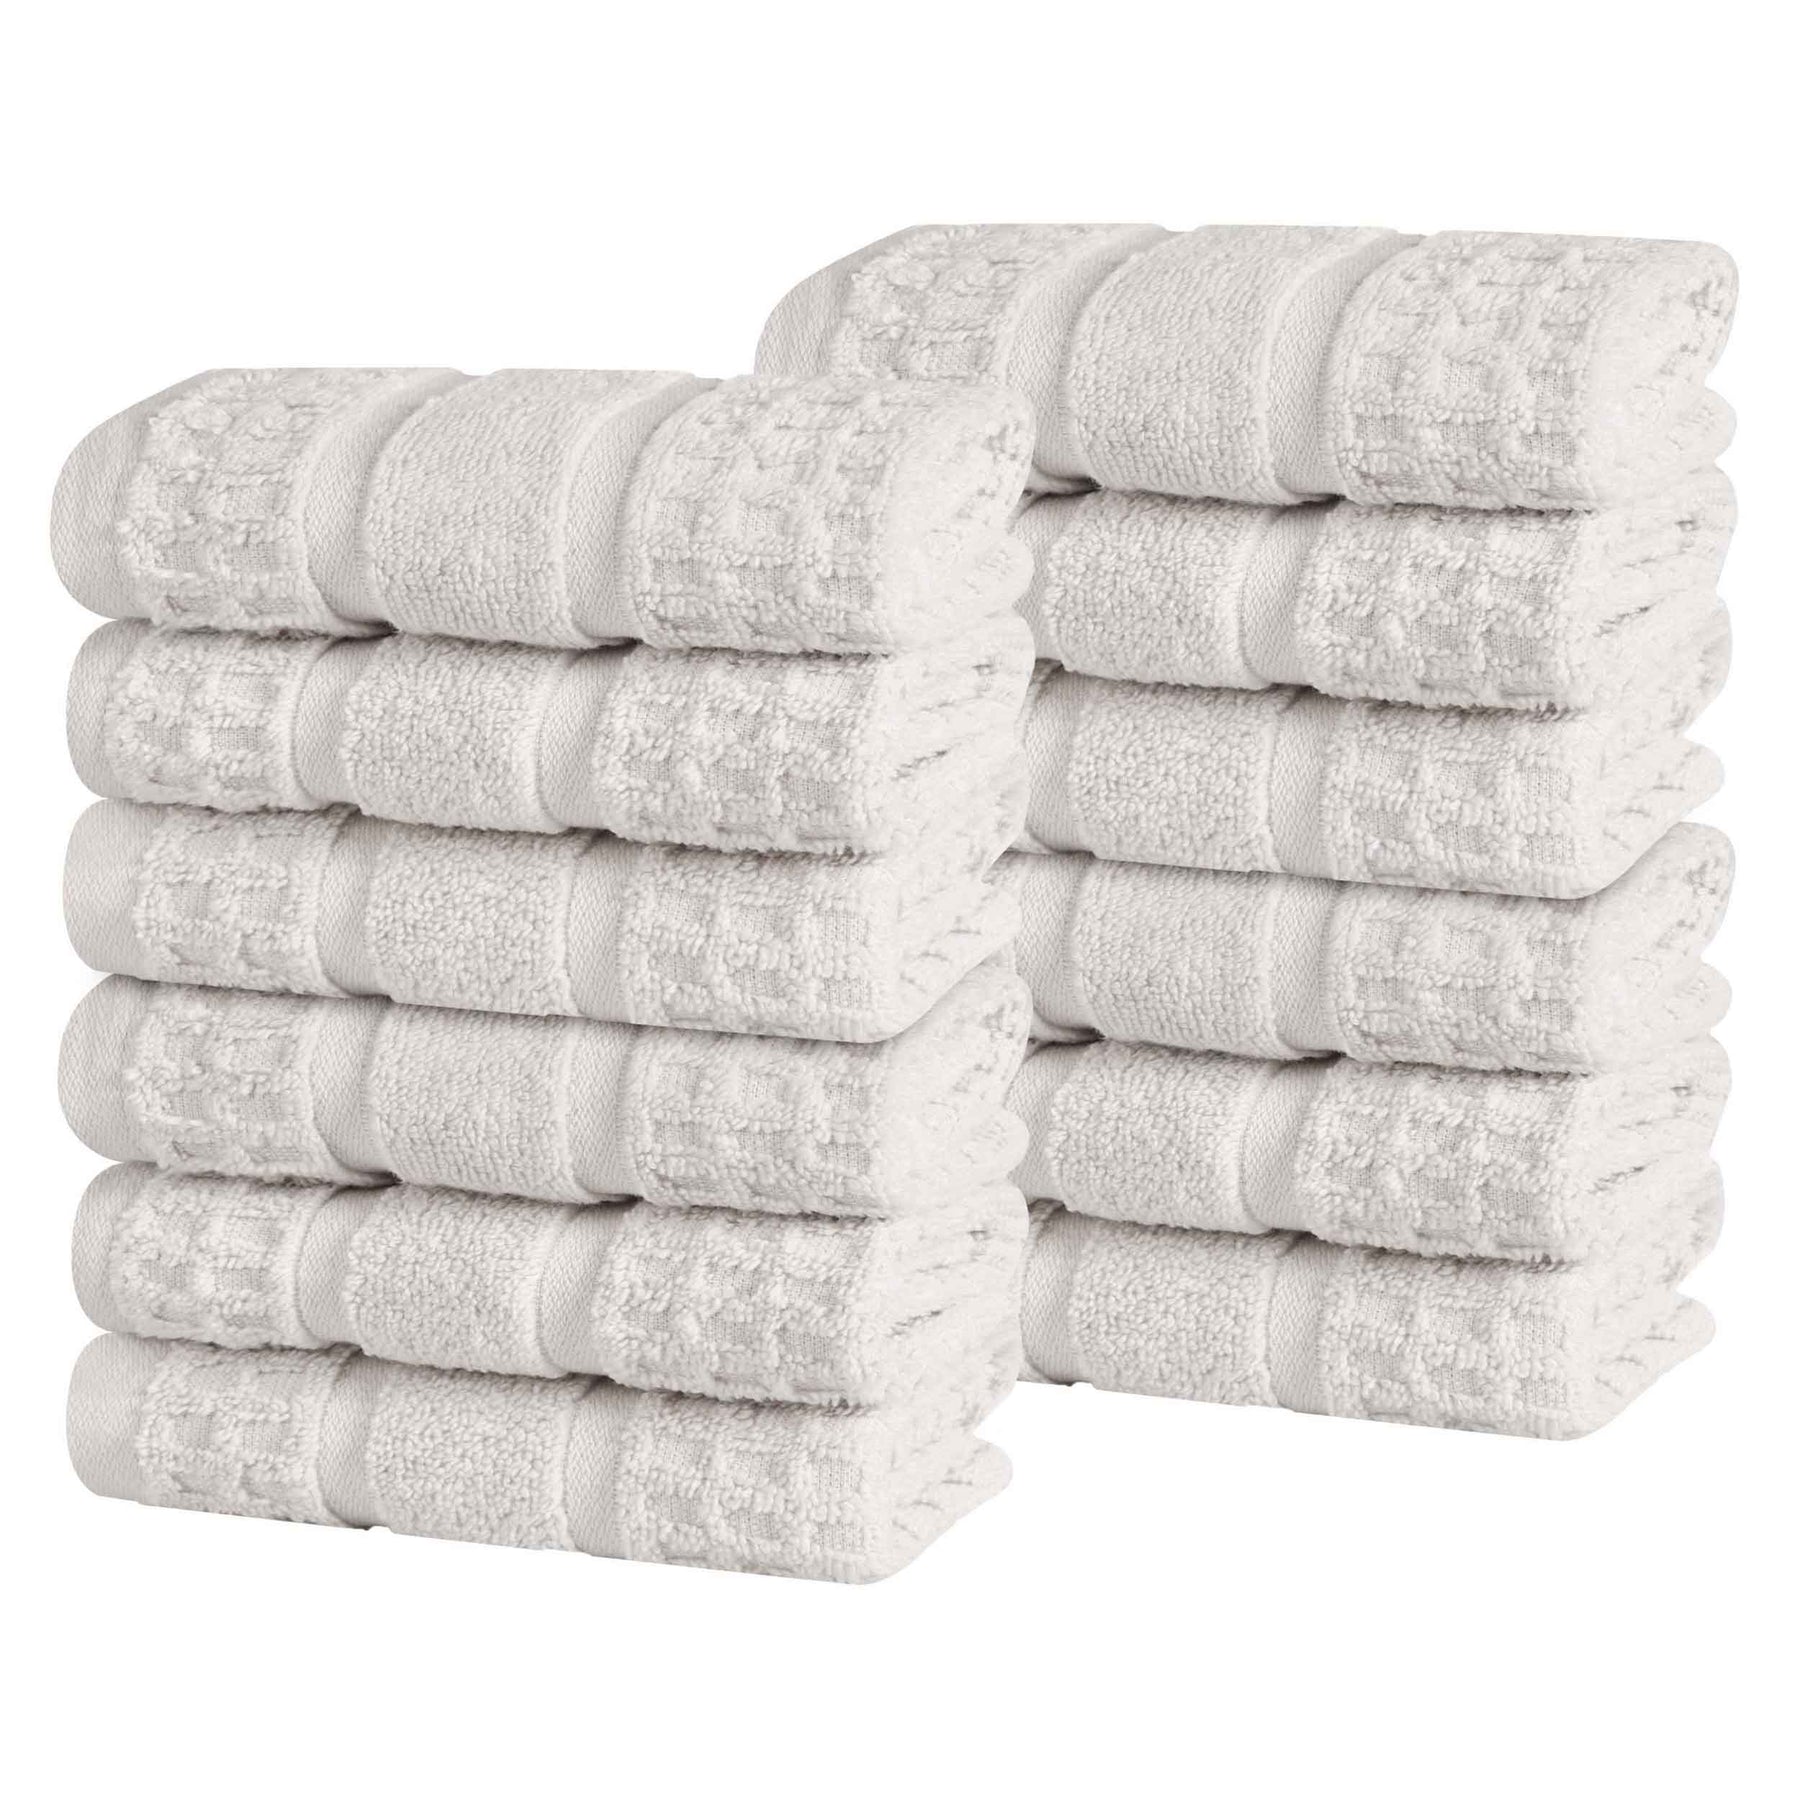 Zero Twist Cotton Waffle Honeycomb Face Towel Washcloth - Stone